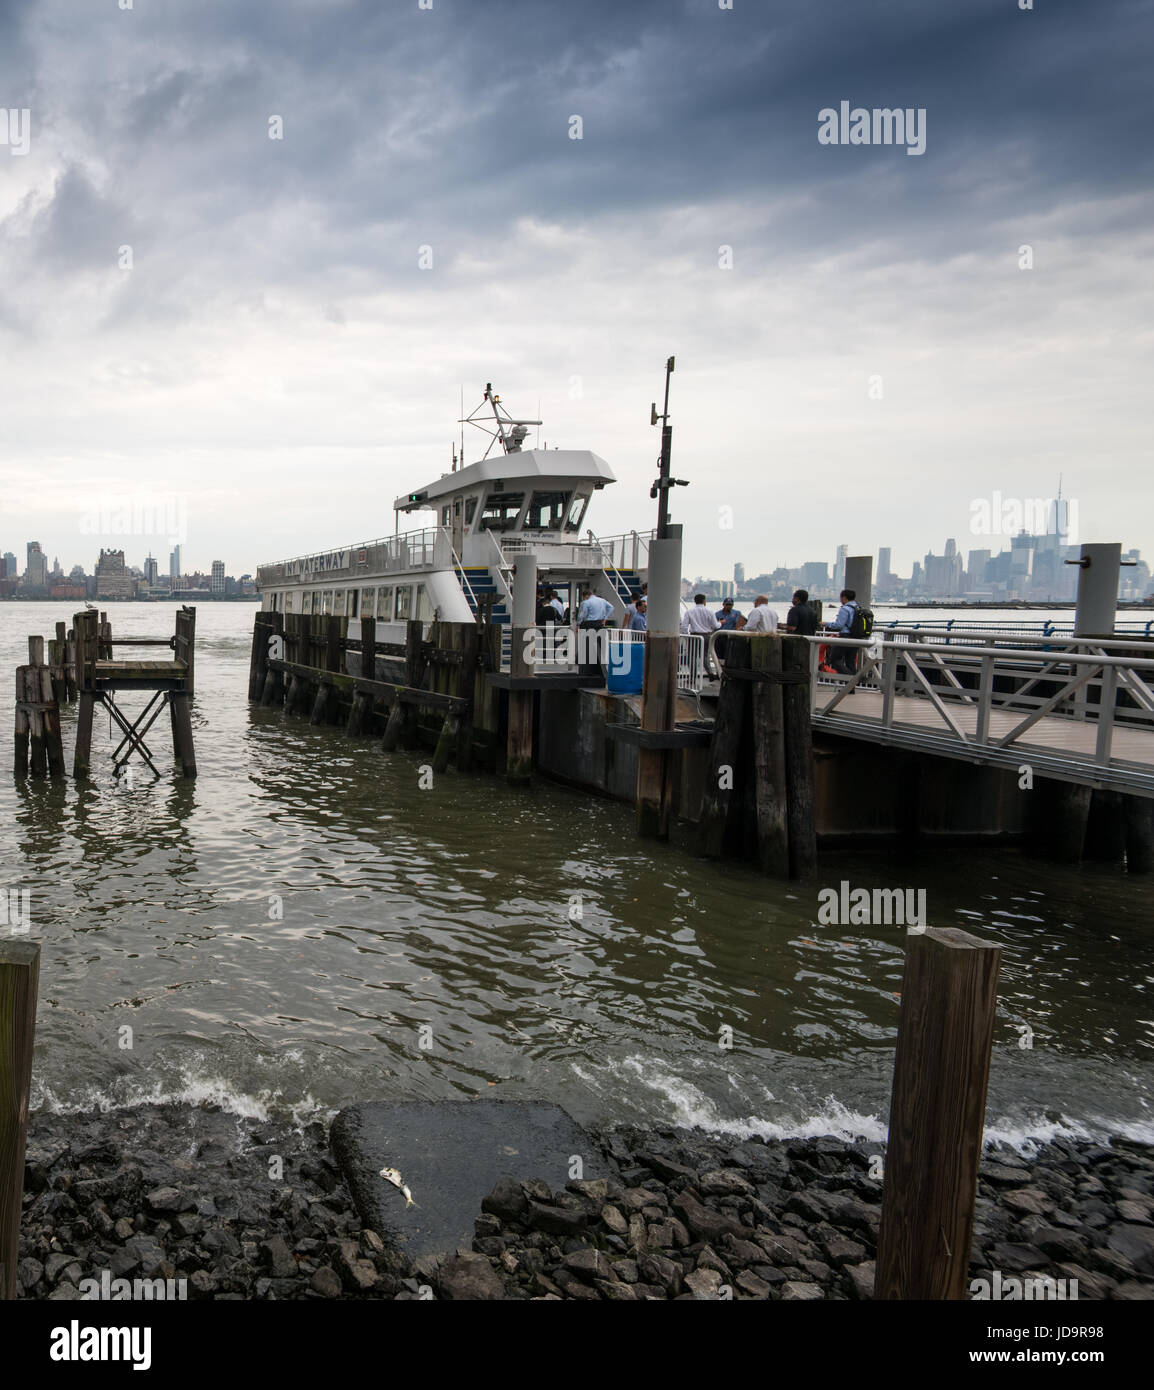 Il passeggero barca dal jetty di legno di inguine in primo piano e ciottoli a riva, New York, Stati Uniti d'America. 2016 città urbana negli Stati Uniti d'America Foto Stock